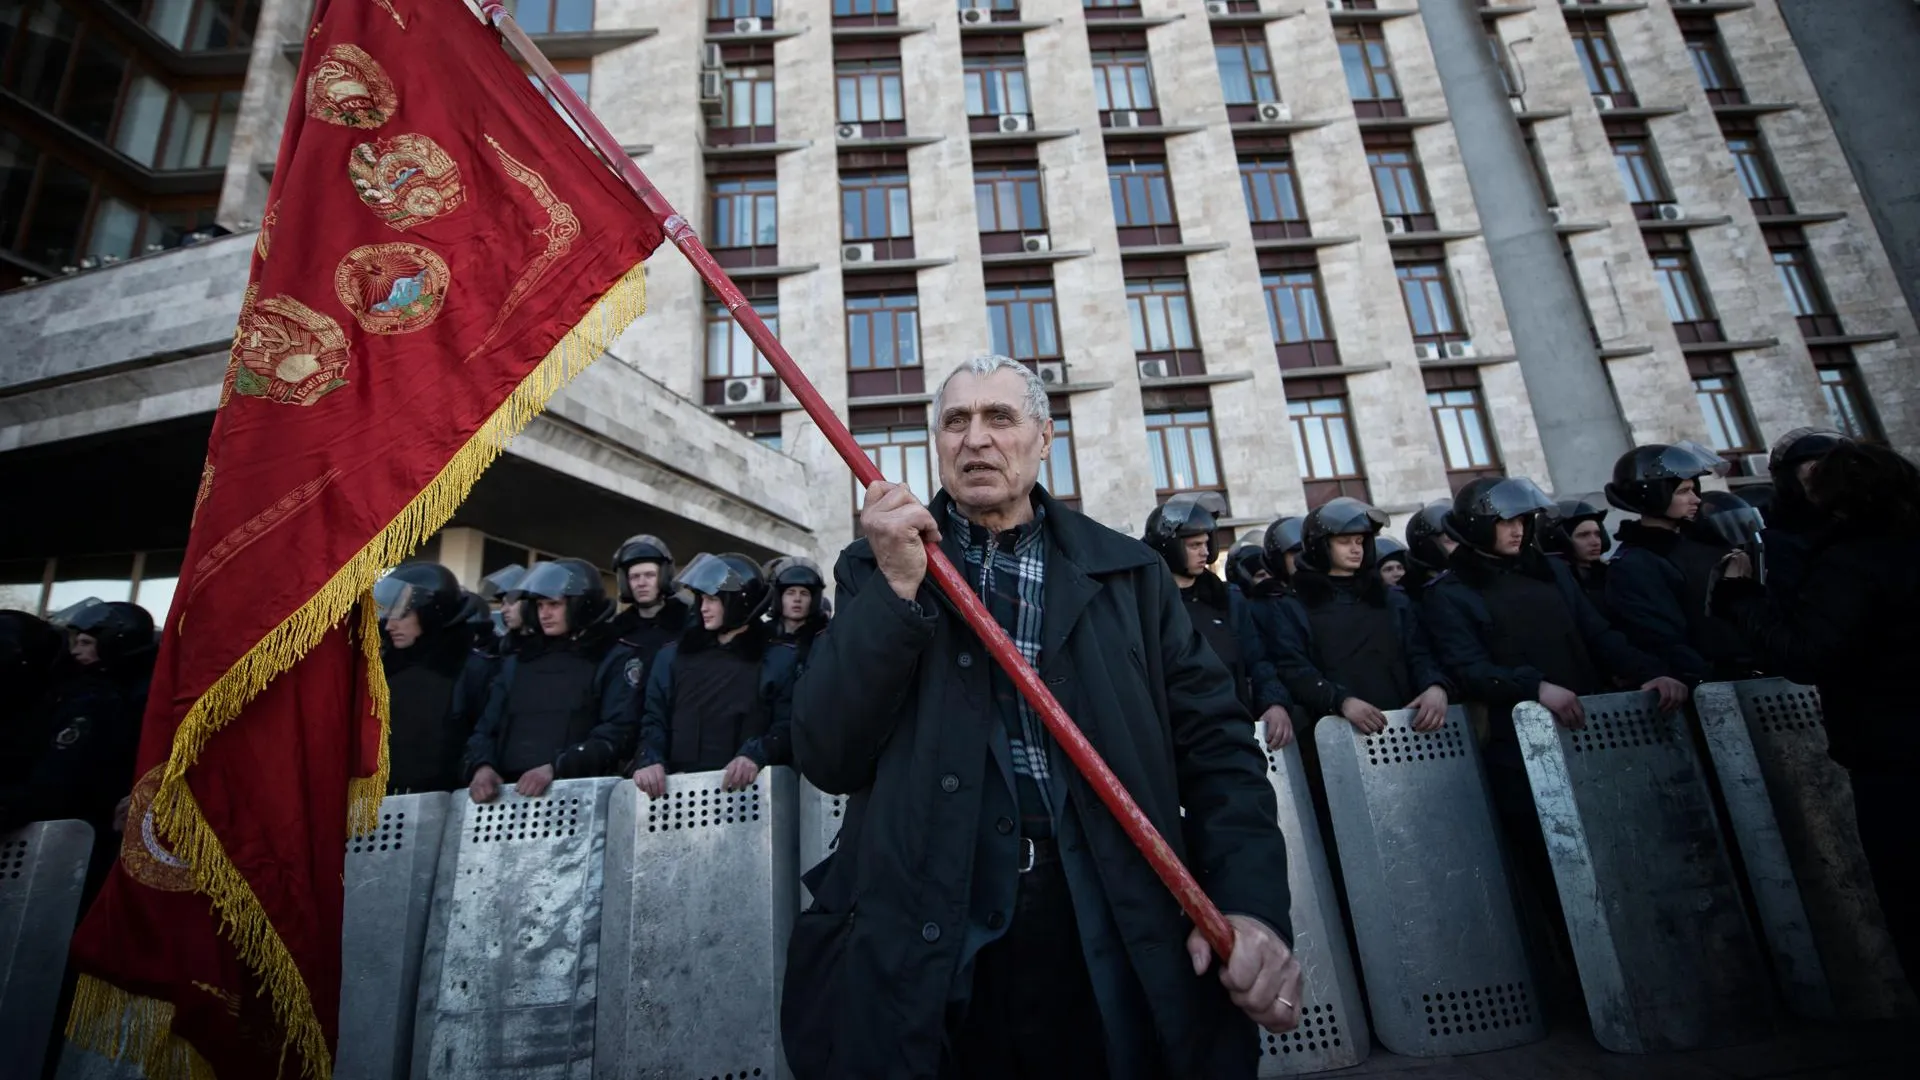 Пророссийский митинг в Донецке, 2014 год / Romain Carre / ZUMAPRESS.com